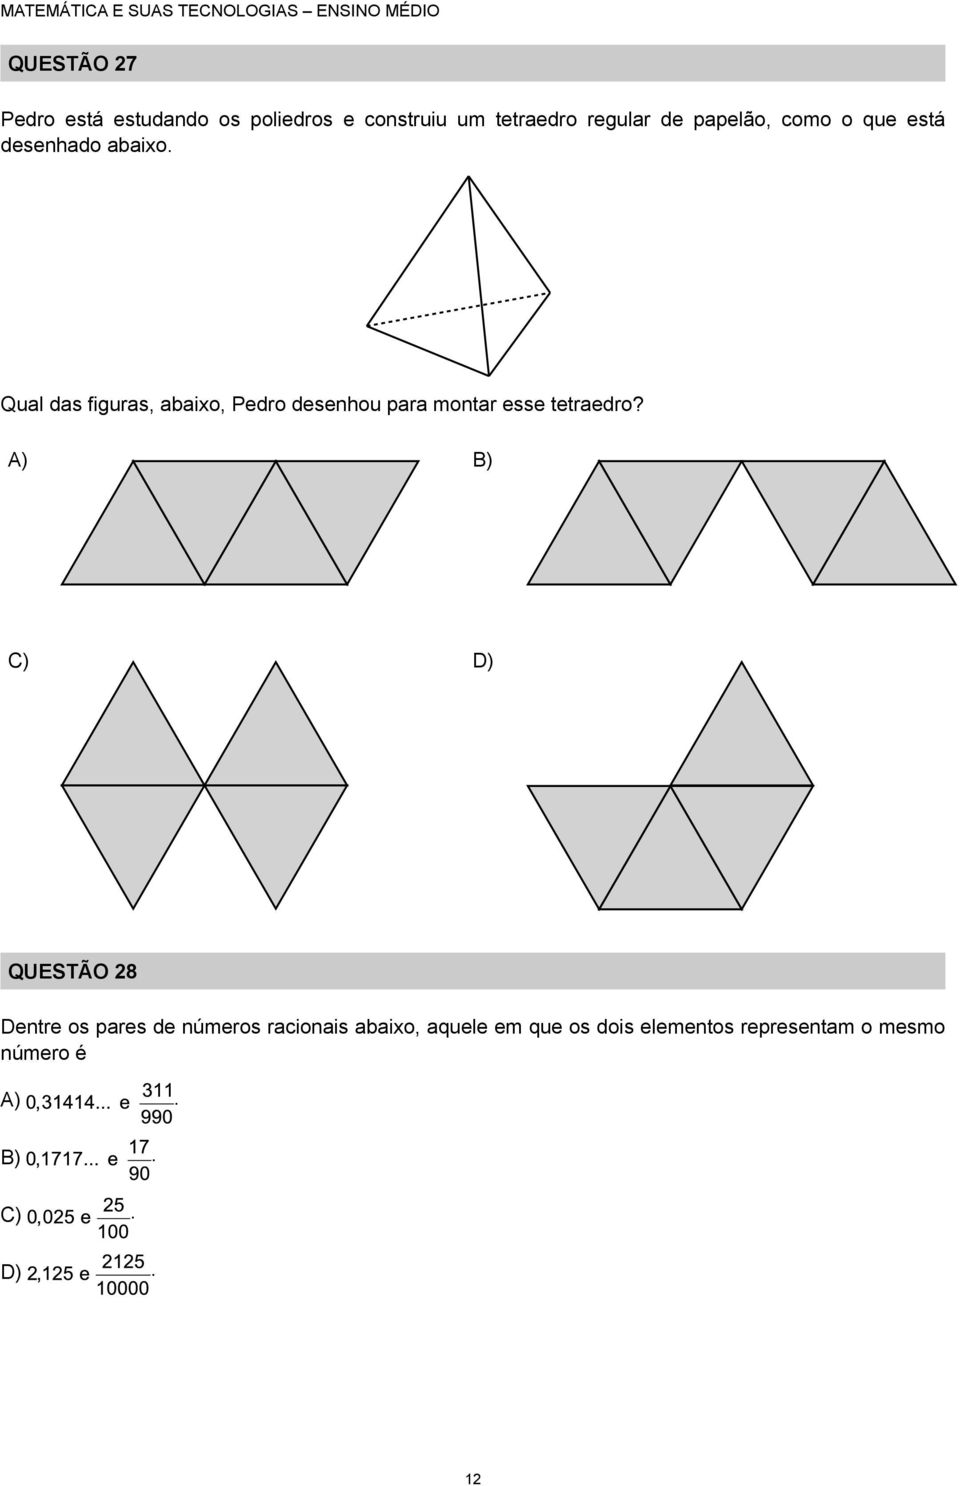 Qual das figuras, abaixo, Pedro desenhou para montar esse tetraedro?